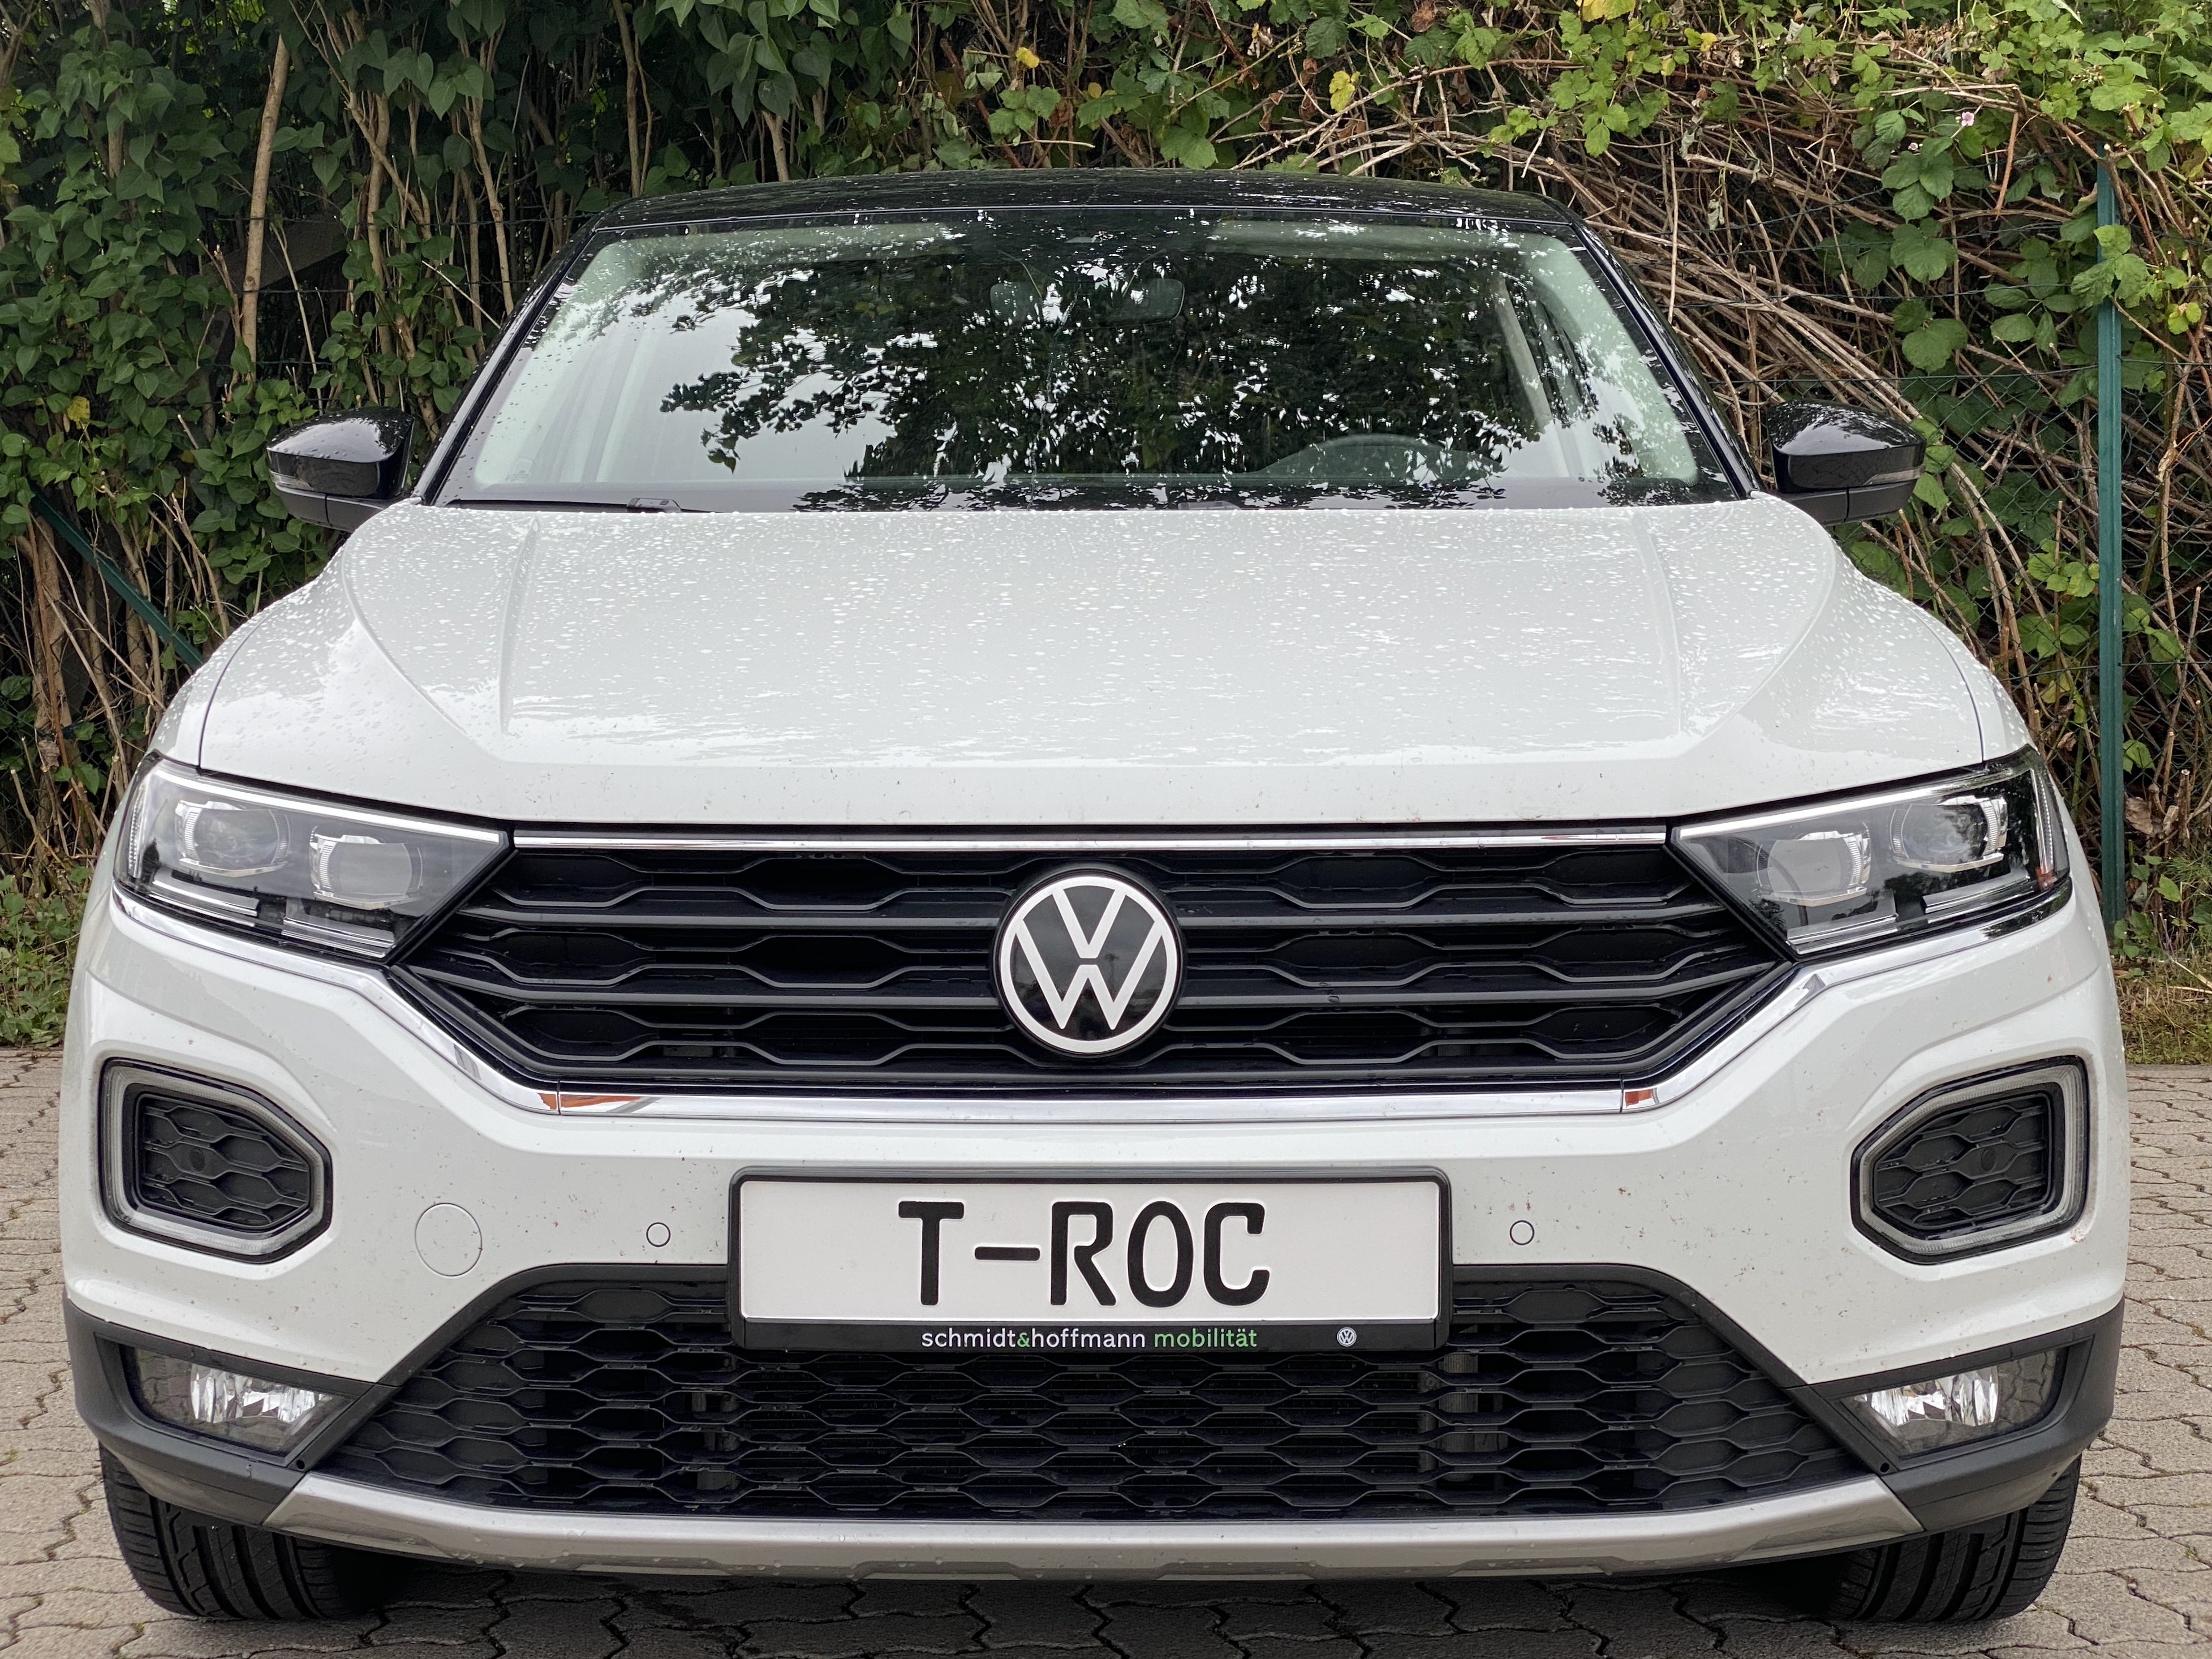 VW Zeichen, Emblem Schwarz/Weiß New Look T-Roc / R ACC